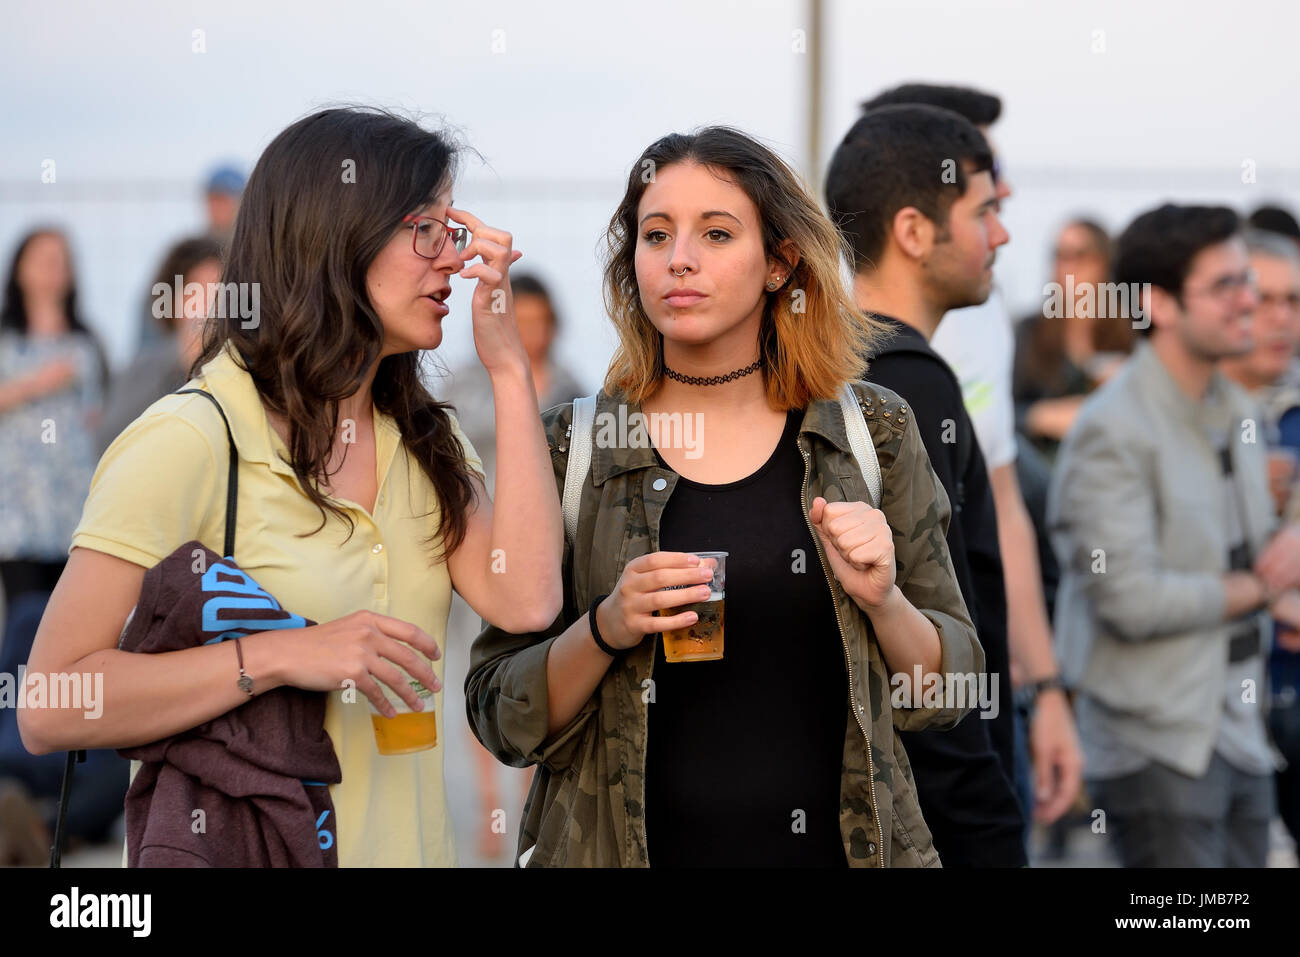 BARCELONA - JUN 1: People at Primavera Sound 2016 Festival on June 1, 2016 in Barcelona, Spain. Stock Photo